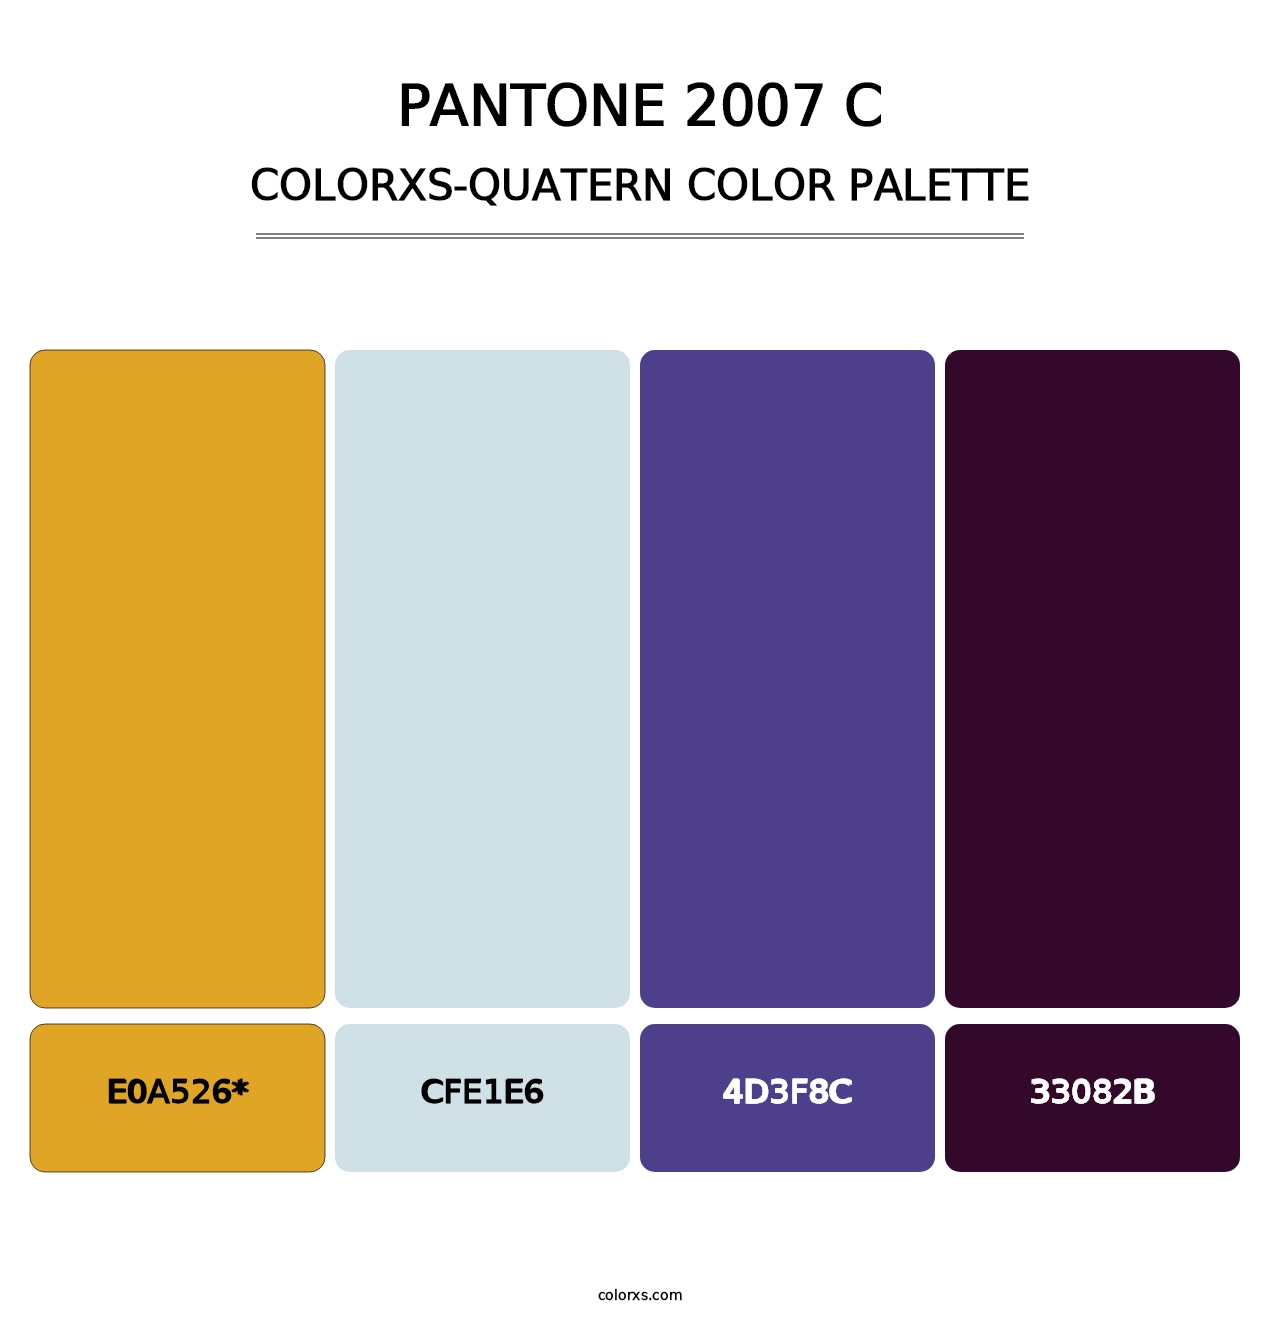 PANTONE 2007 C - Colorxs Quatern Palette